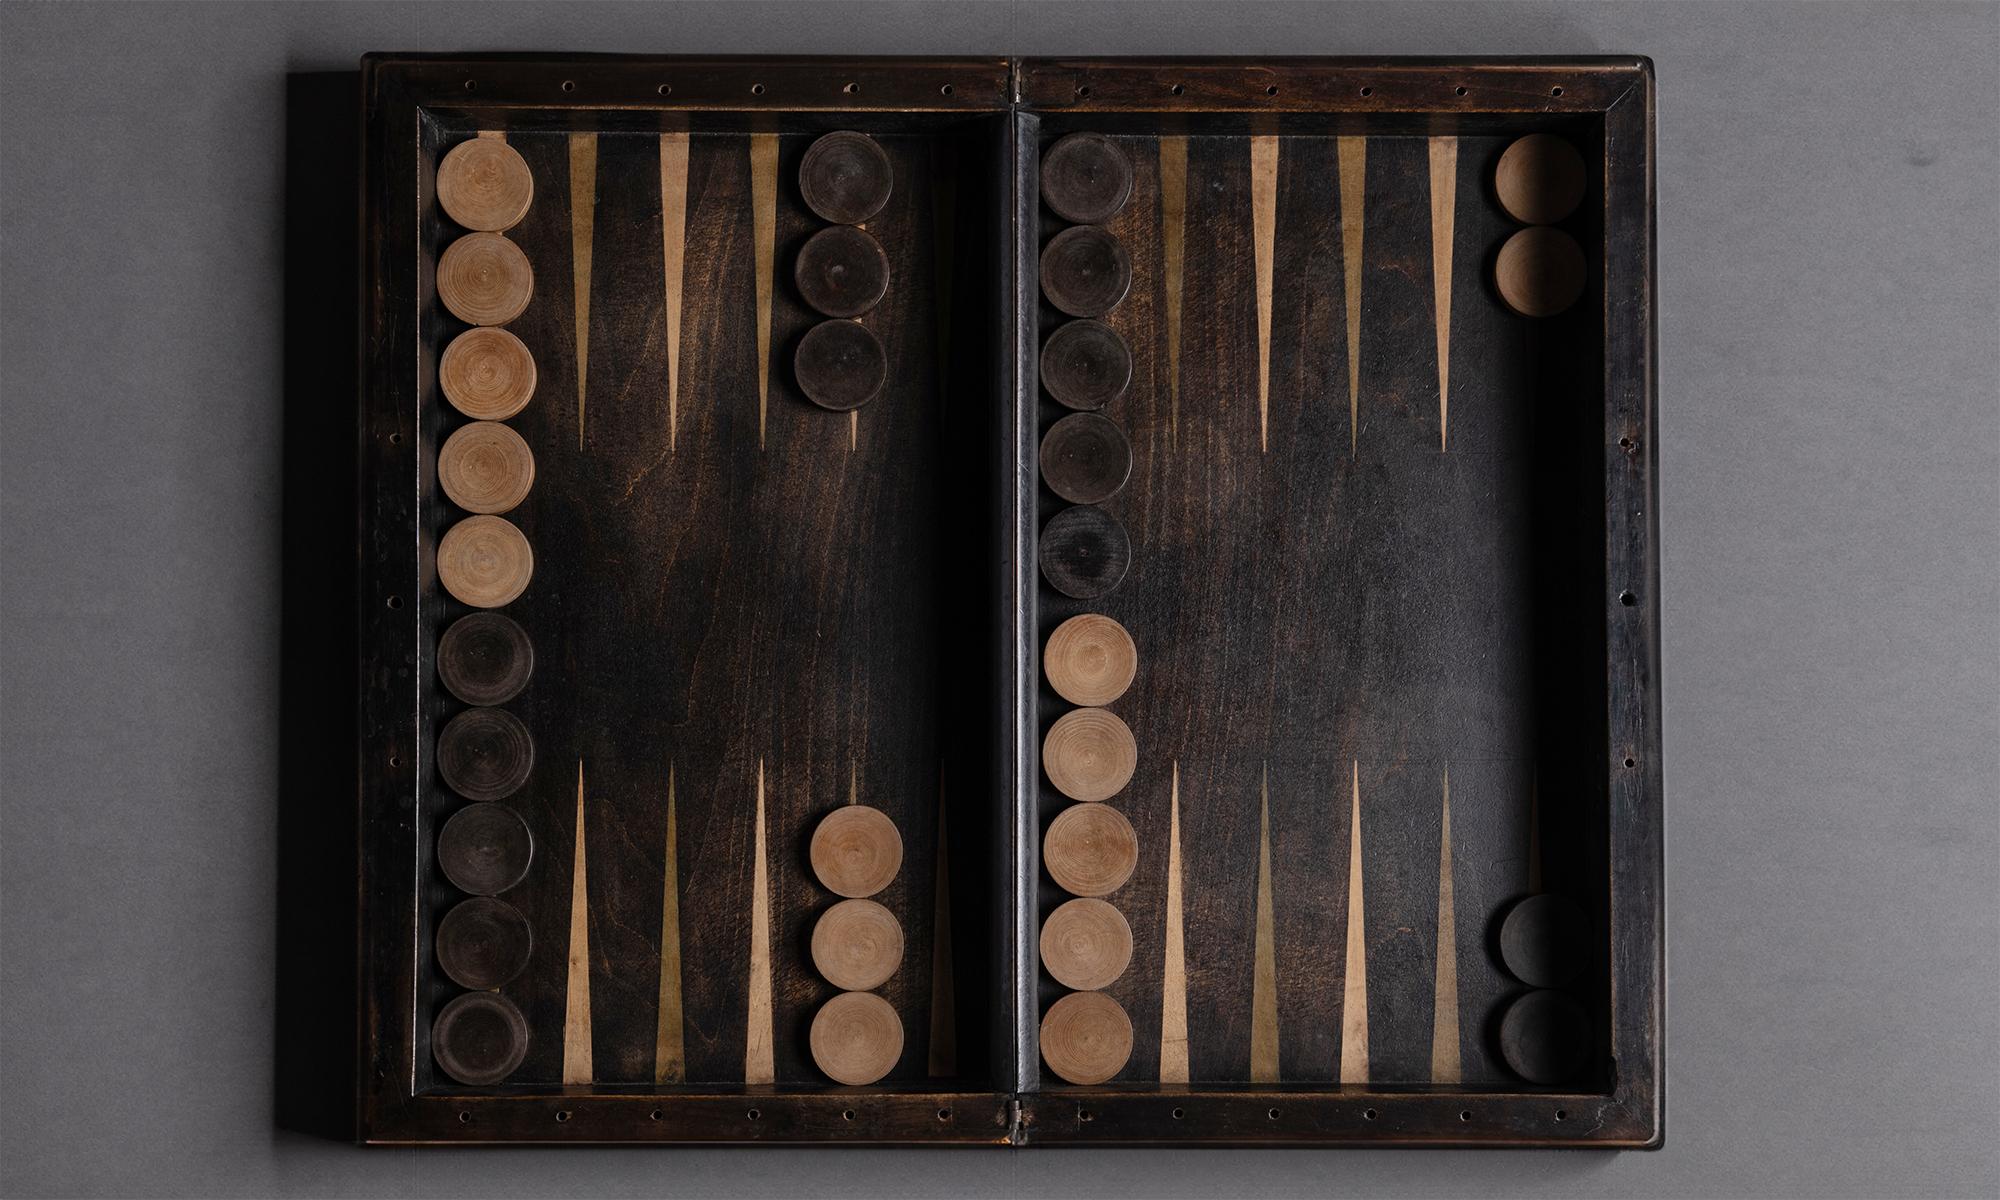 Backgammon-Set

Italien um 1940

GESCHLOSSEN: 22,75 